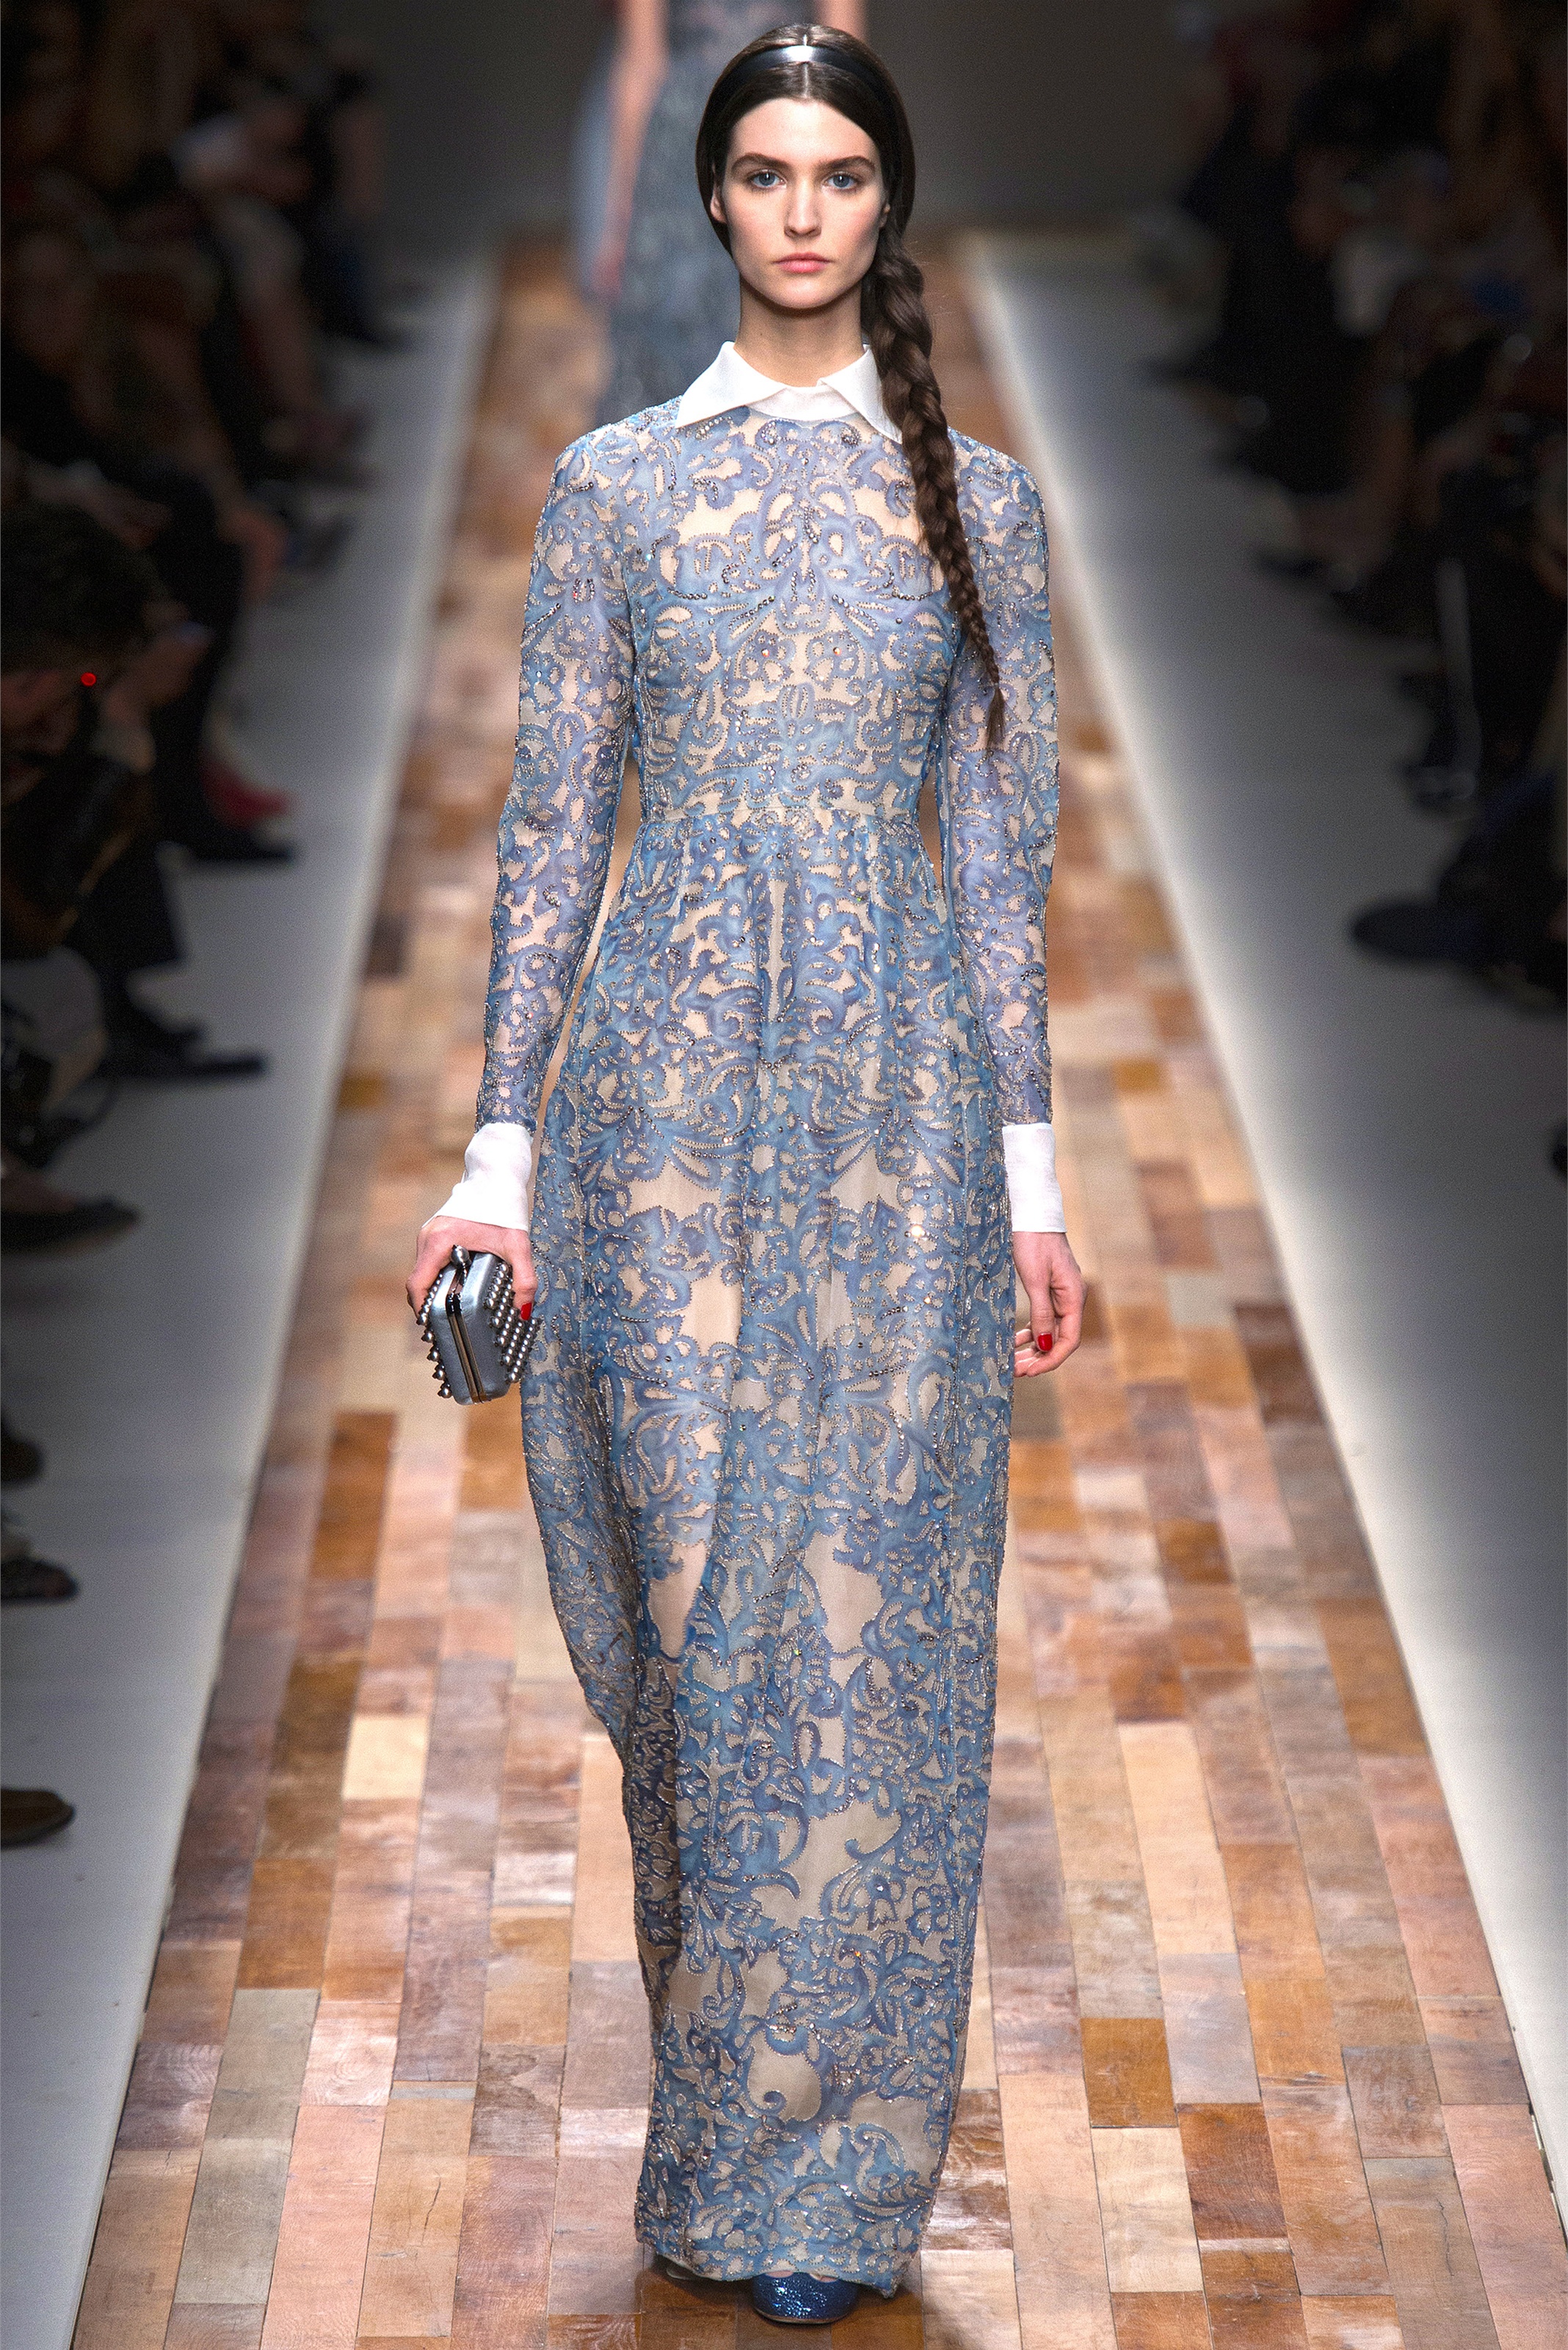 (华伦天奴)于巴黎时装周发布 2013秋冬高级成衣系列 演绎蕾丝风情